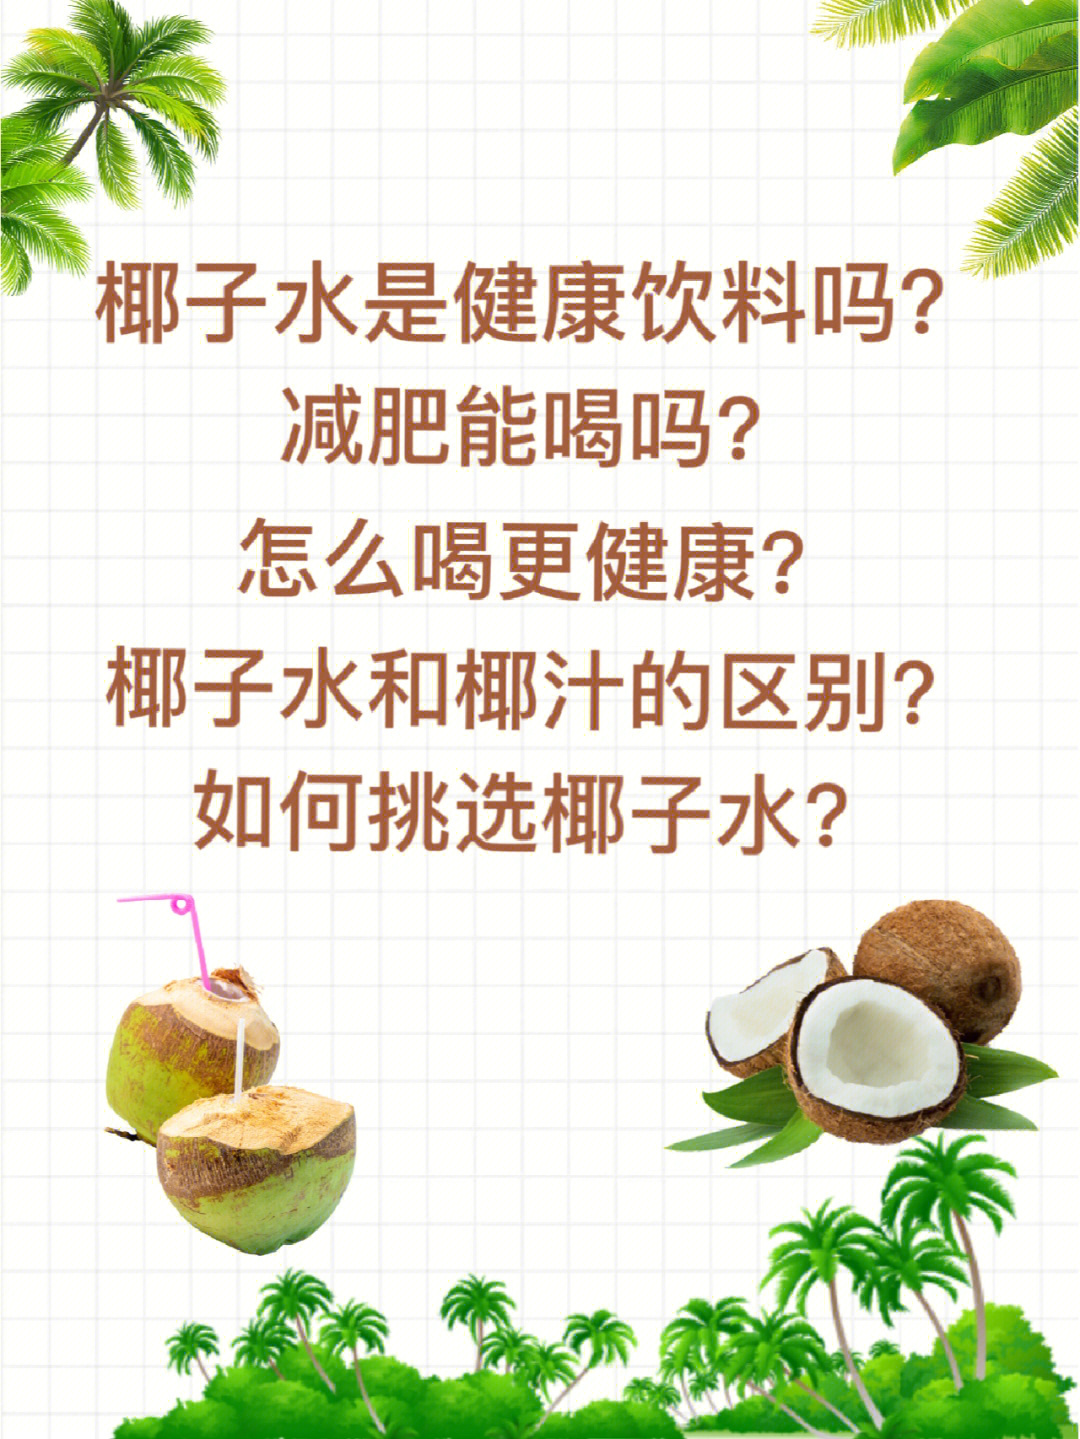 那么椰子水到底有什么好?减肥能喝吗?怎么挑选?它跟椰汁有啥关系?